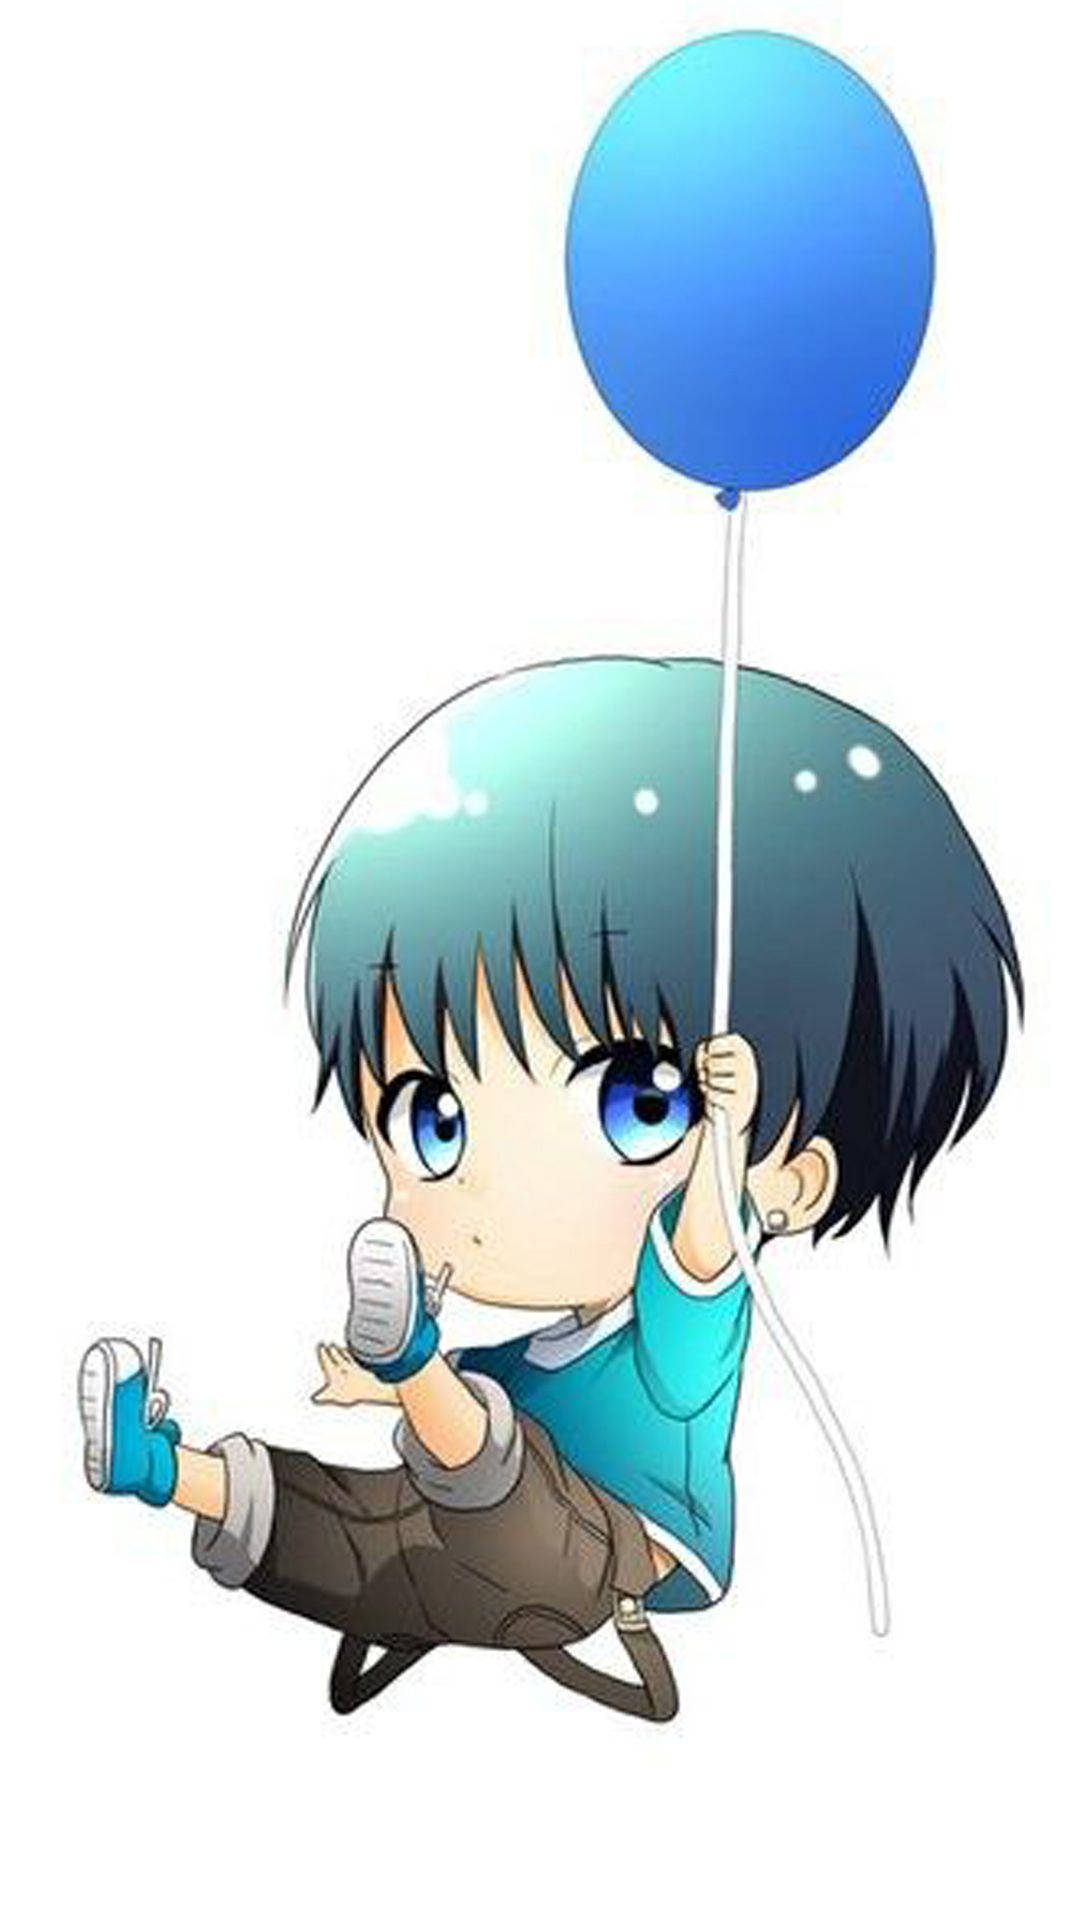 Chibi Cute Boy Cartoon With A Balloon